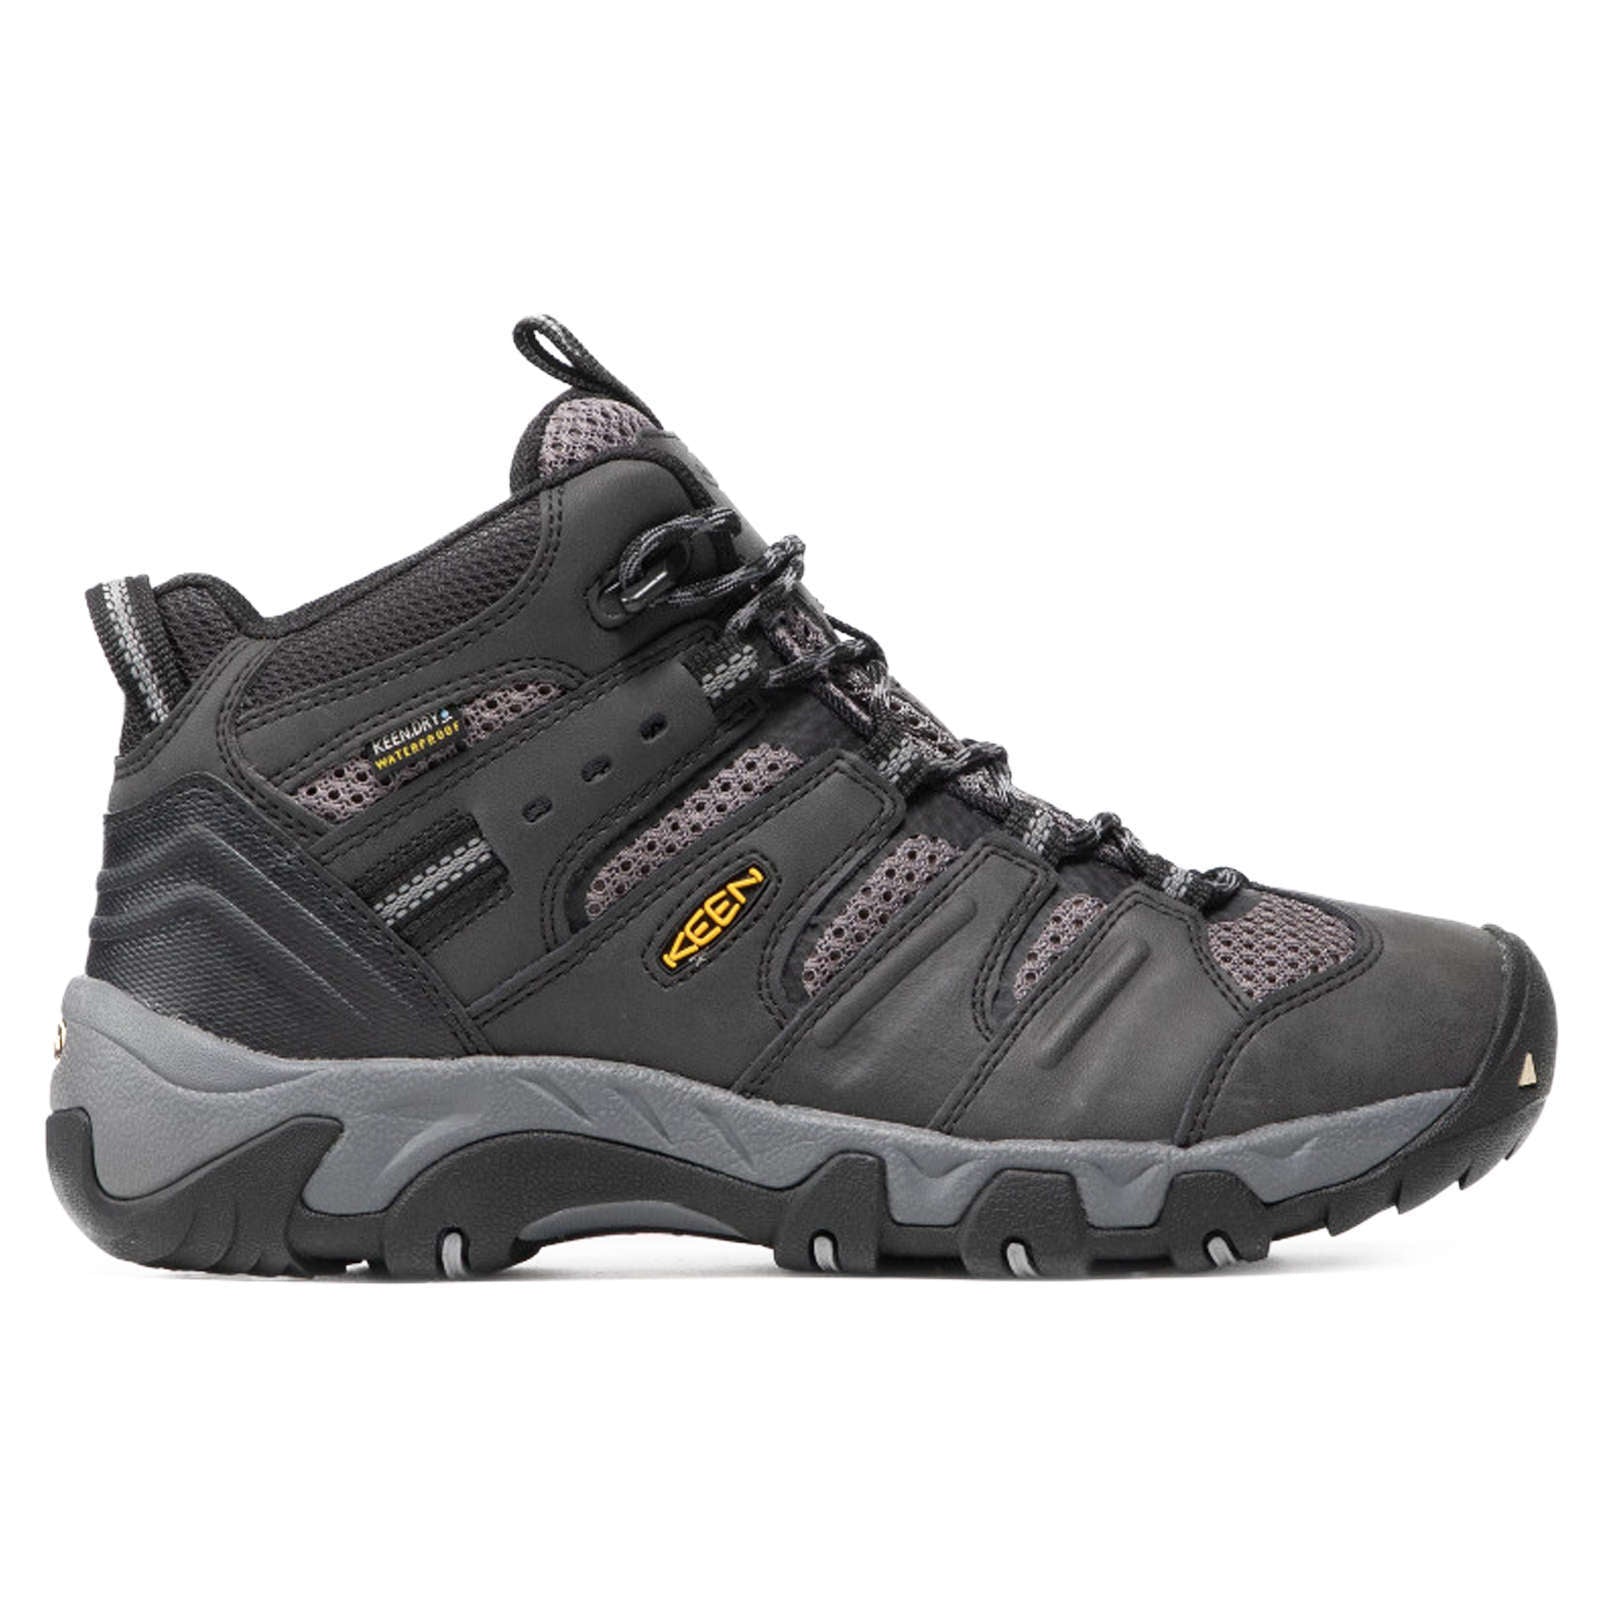 Keen Koven Mid Leather & Mesh Men's Waterproof Hiking Boots#color_black steel grey